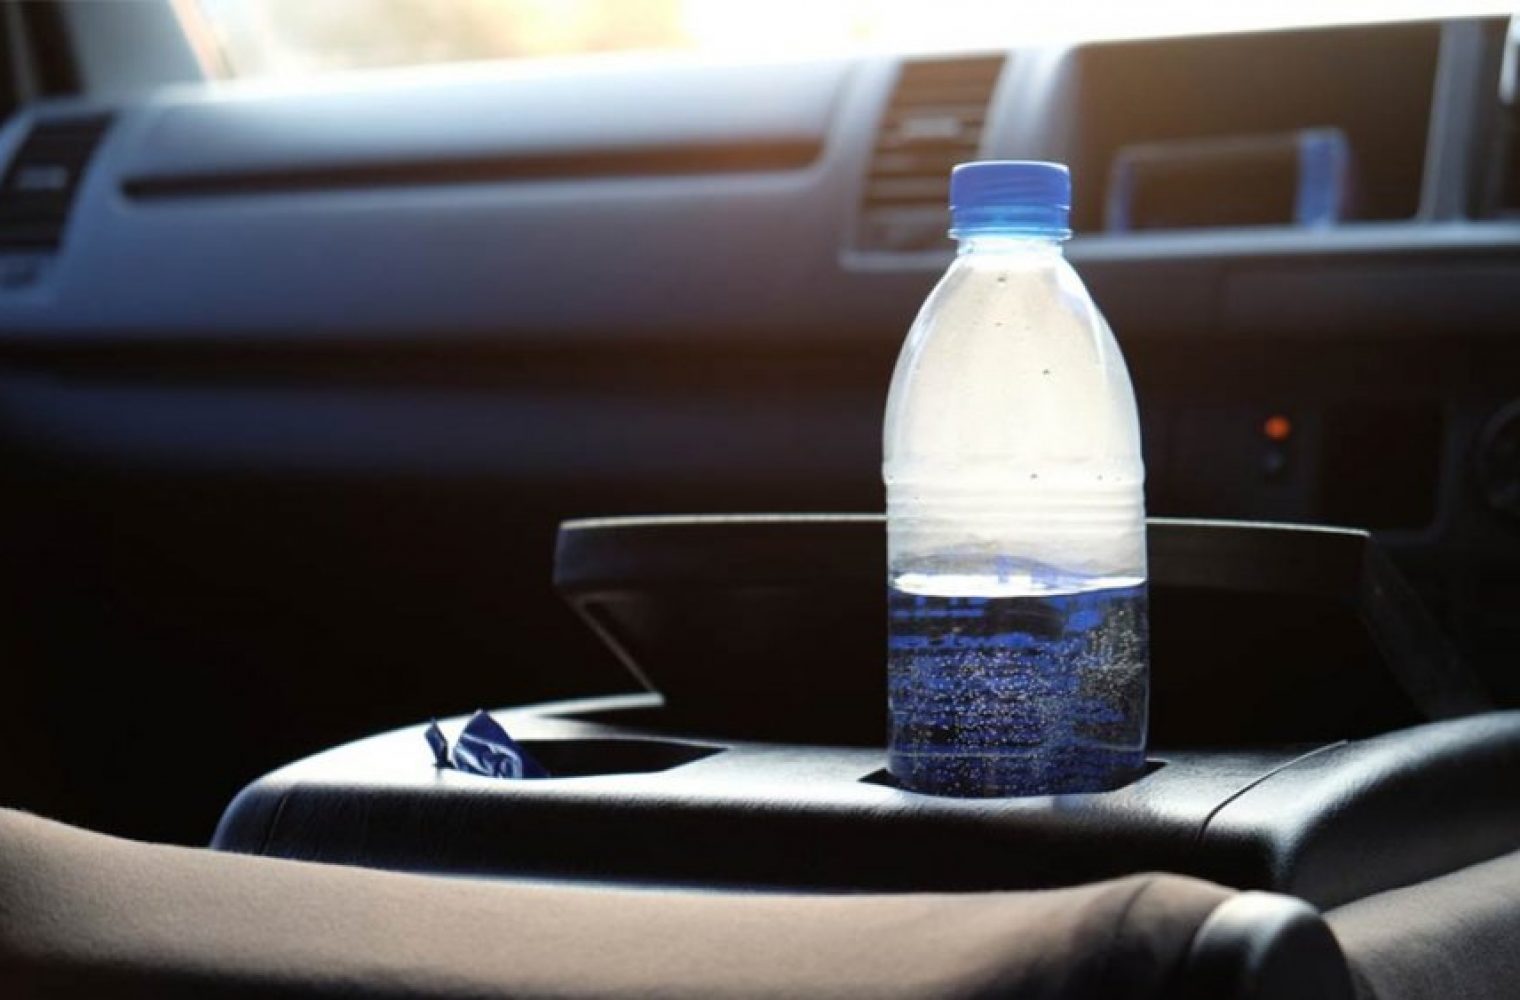 Δείτε γιατί δεν πρέπει να αφήνετε πλαστικό μπουκάλι με νερό στον ήλιο ή στο αυτοκίνητο όταν έχει ζέστη